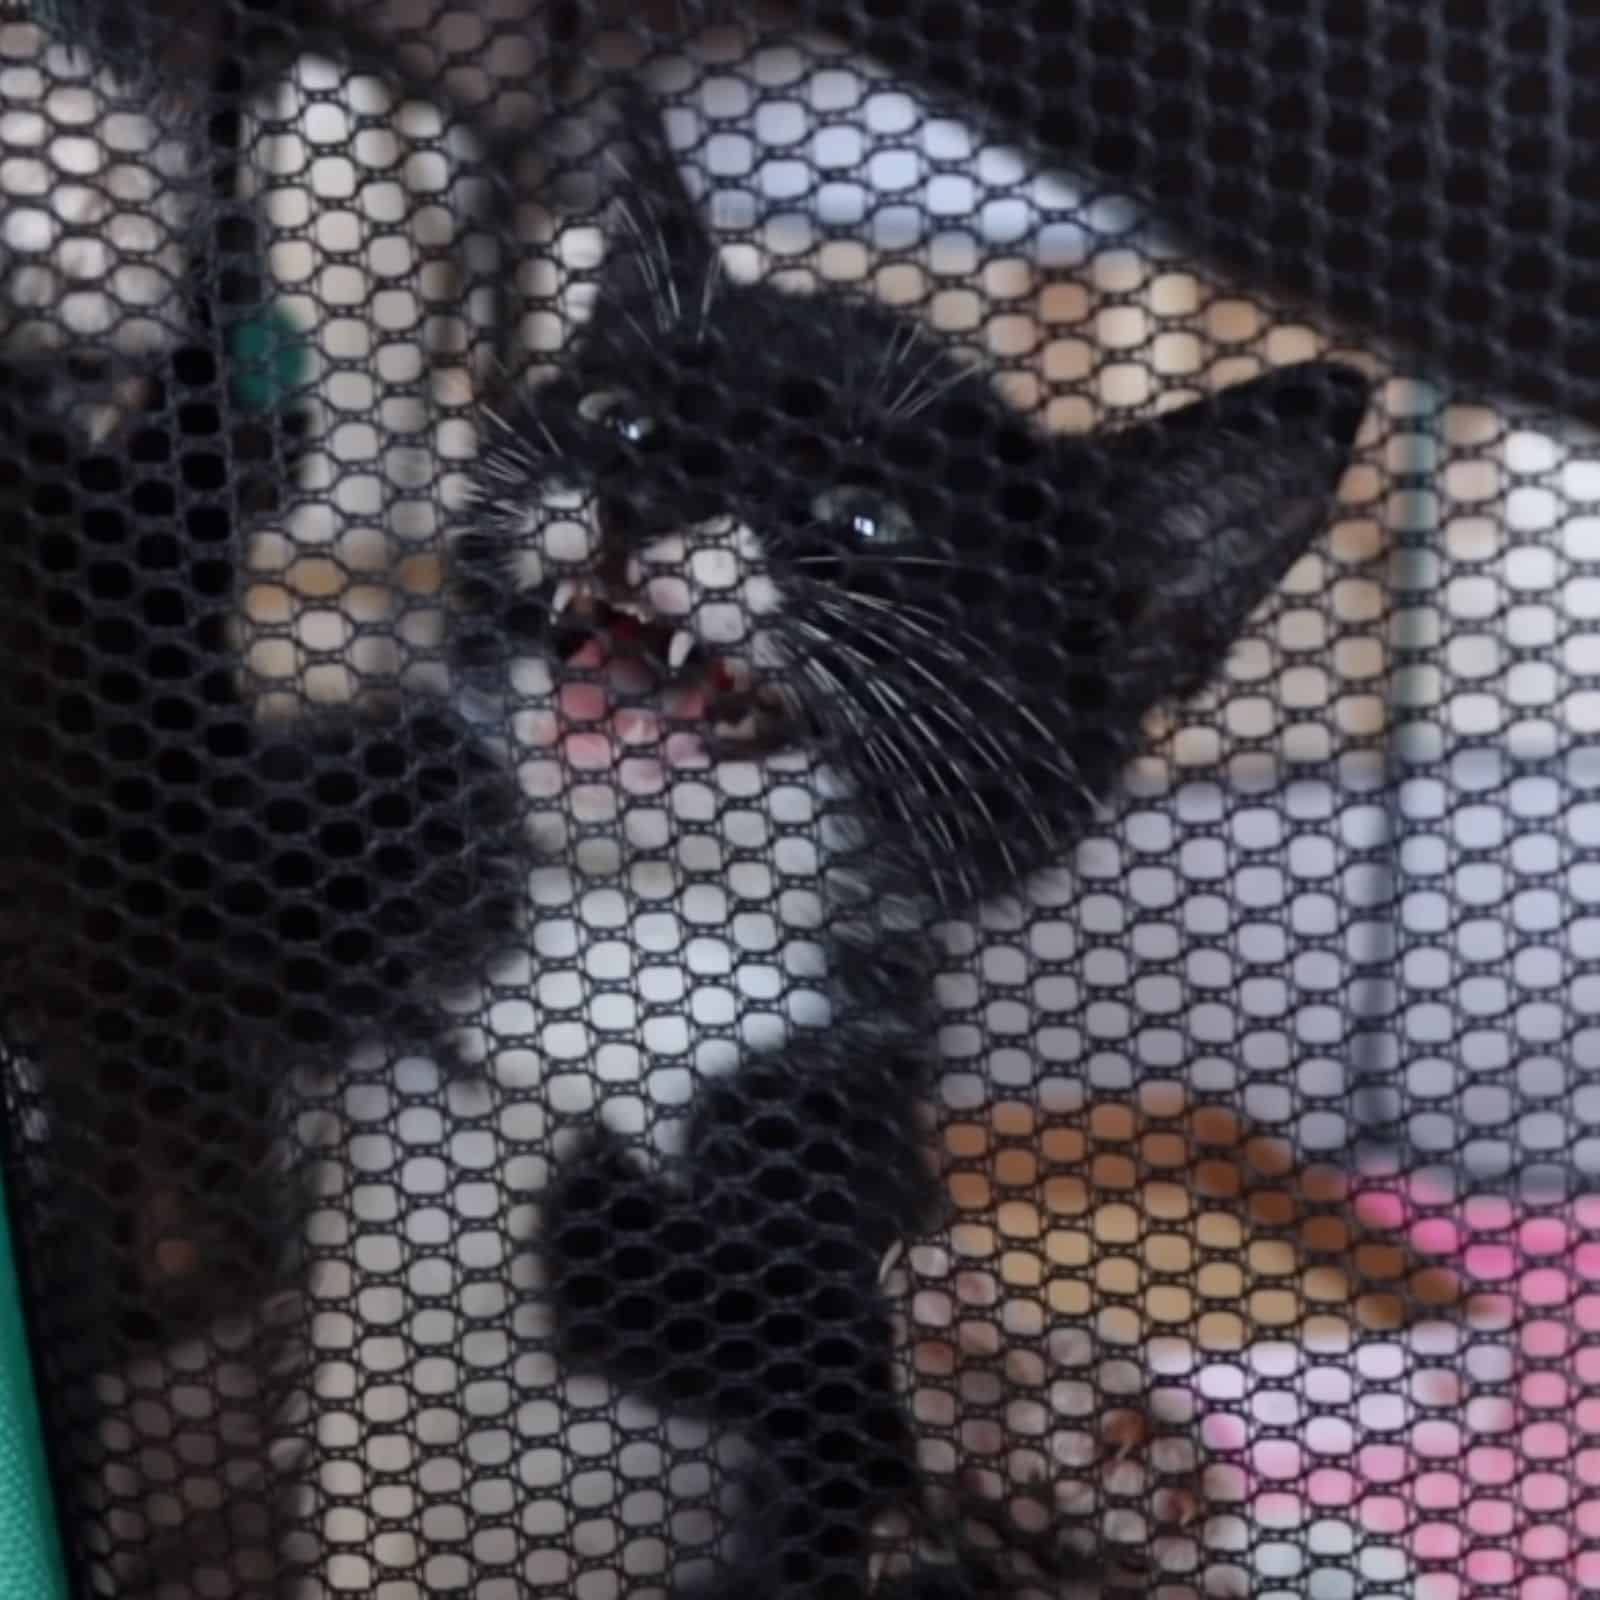 kitten in a playpen